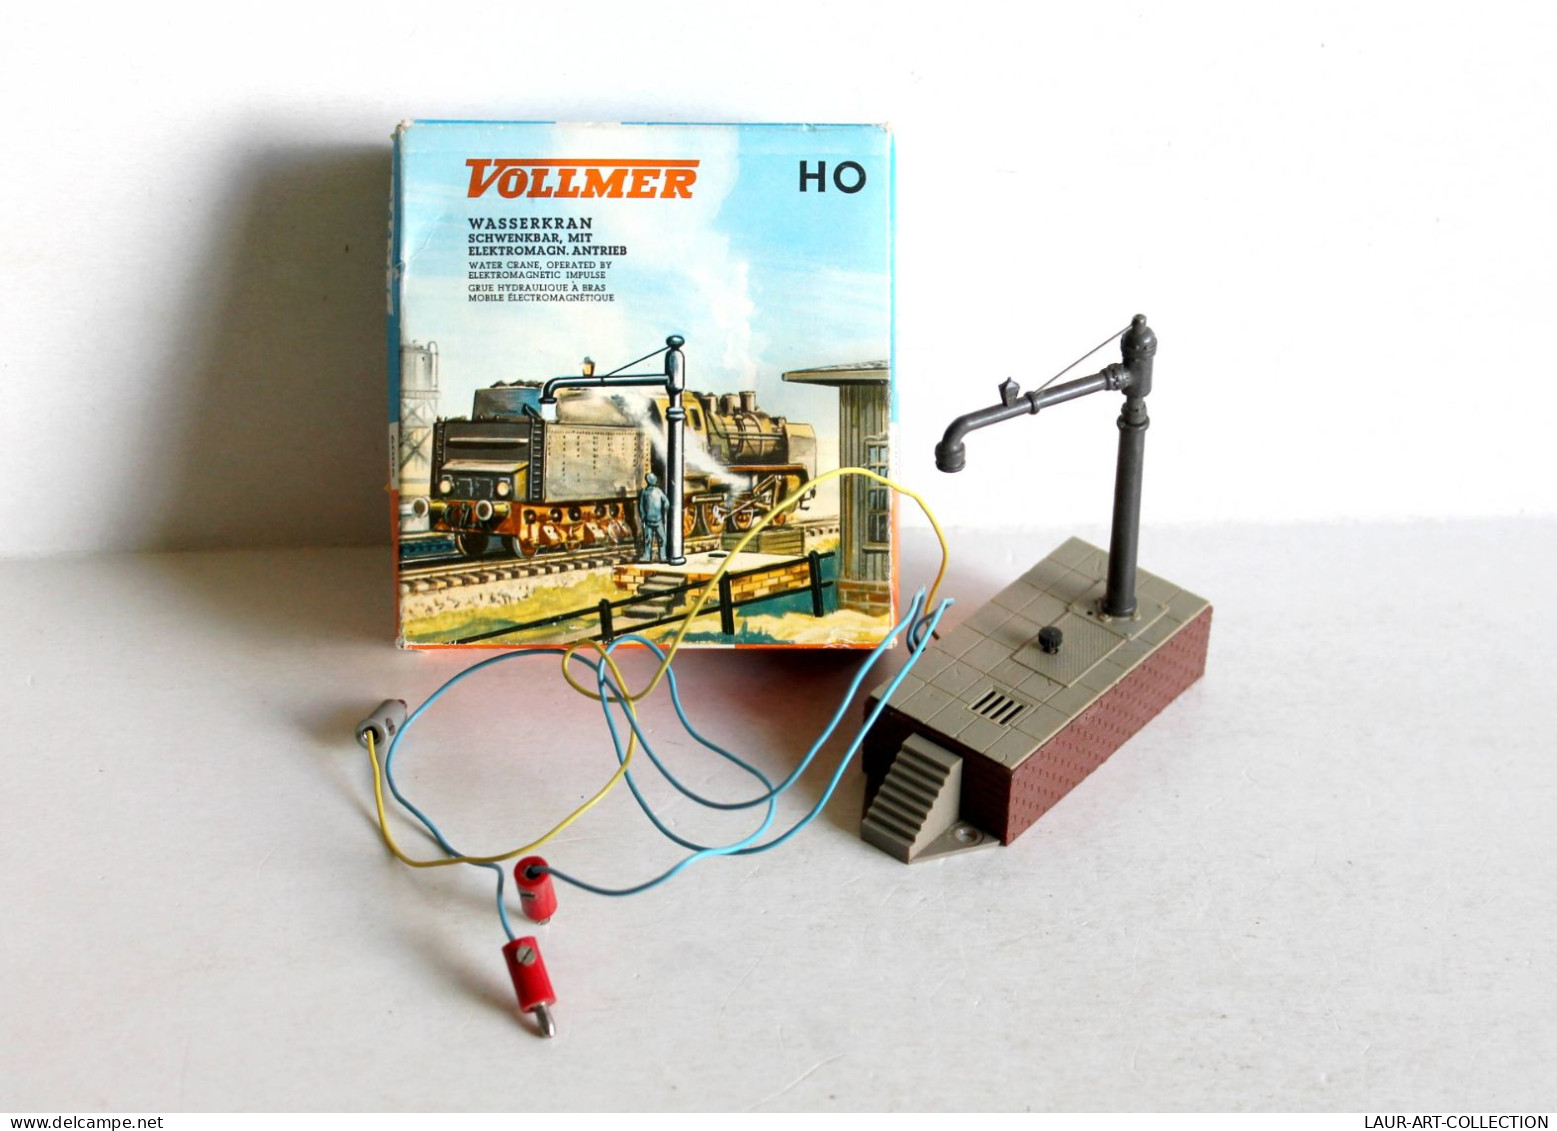 VOLLMER HO N°6006 GRUE HYDRAULIQUE A BRAS MOBILE ELECTROMAGNETIQUE / WATER CRANE / ANCIEN MODEL REDUIT (1712.254) - Alimentation & Accessoires électriques